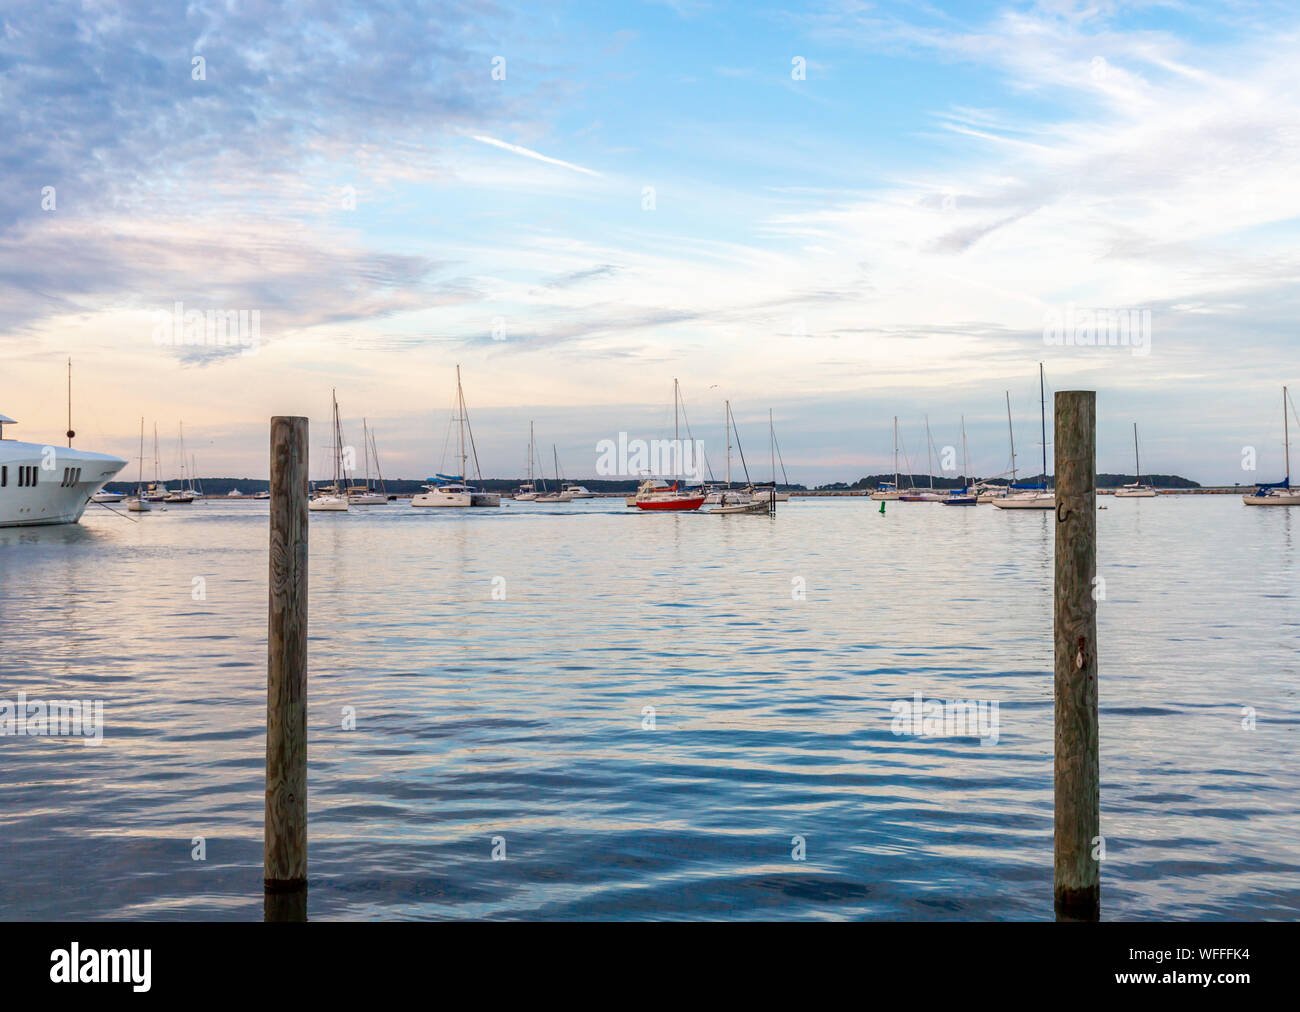 Boats on moorings in Sag Harbor, NY Stock Photo